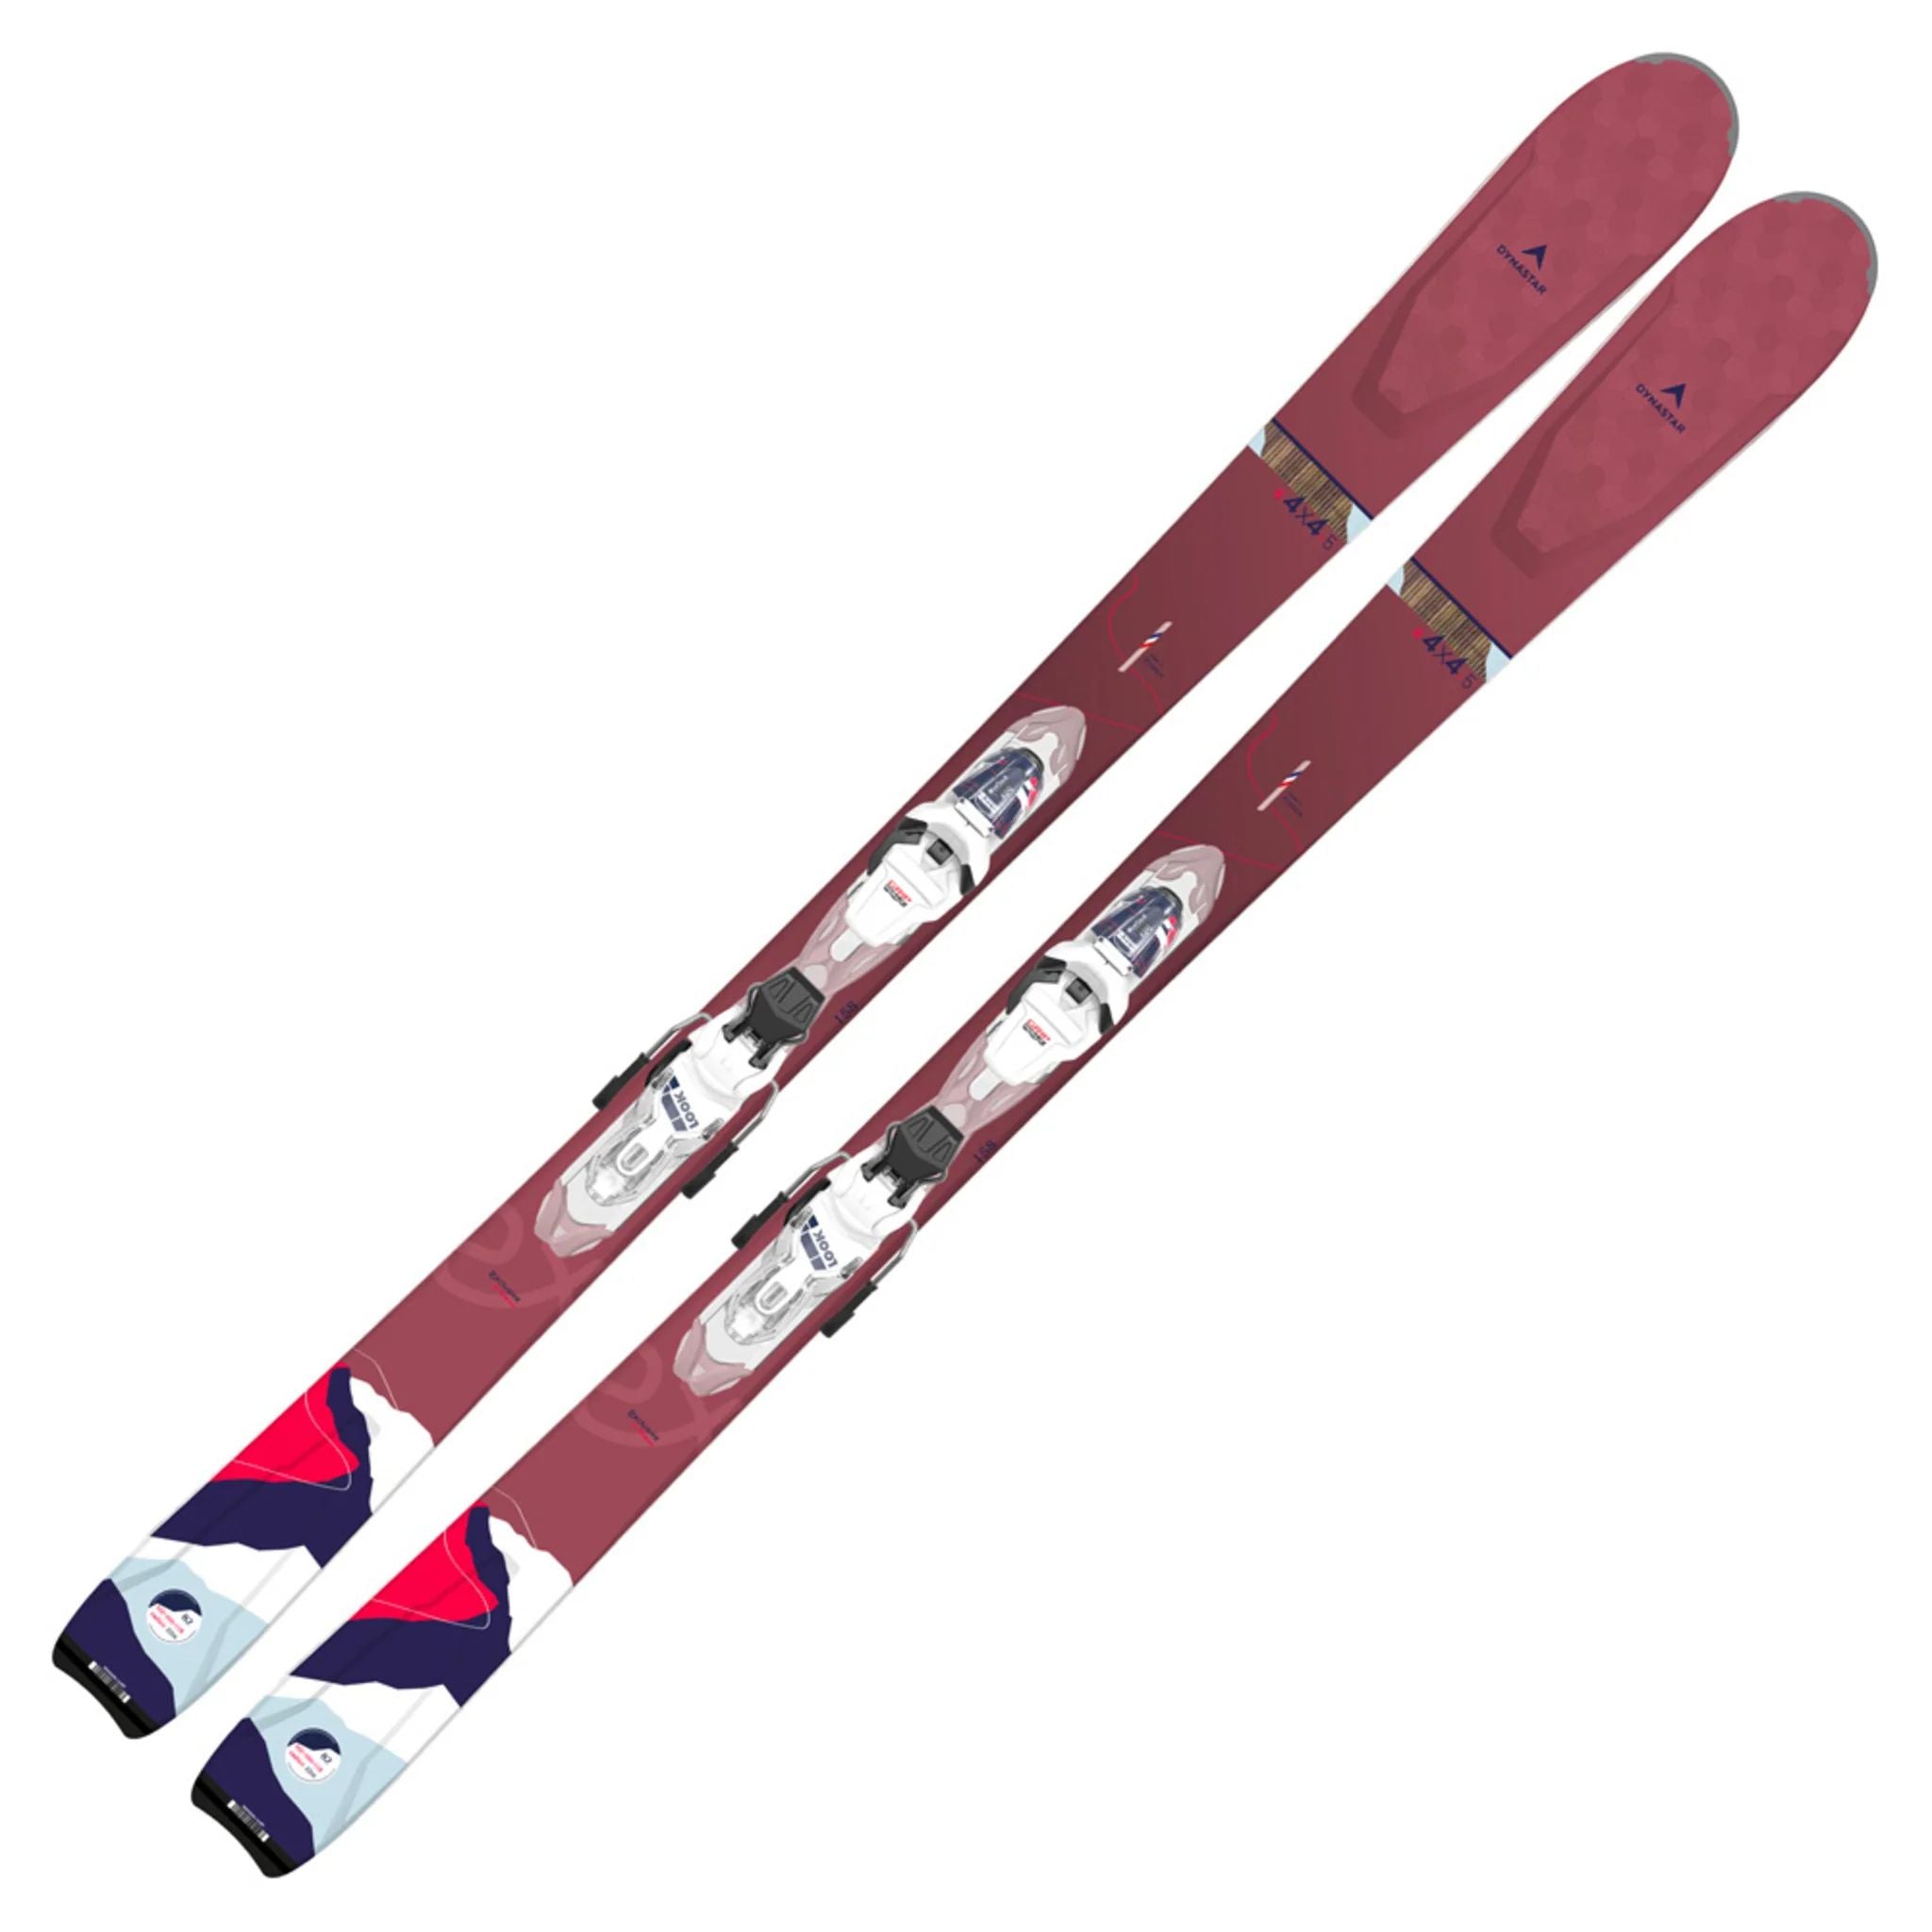 Dynastar E 4x4 5.XP 11 GW B93 Womens Ski